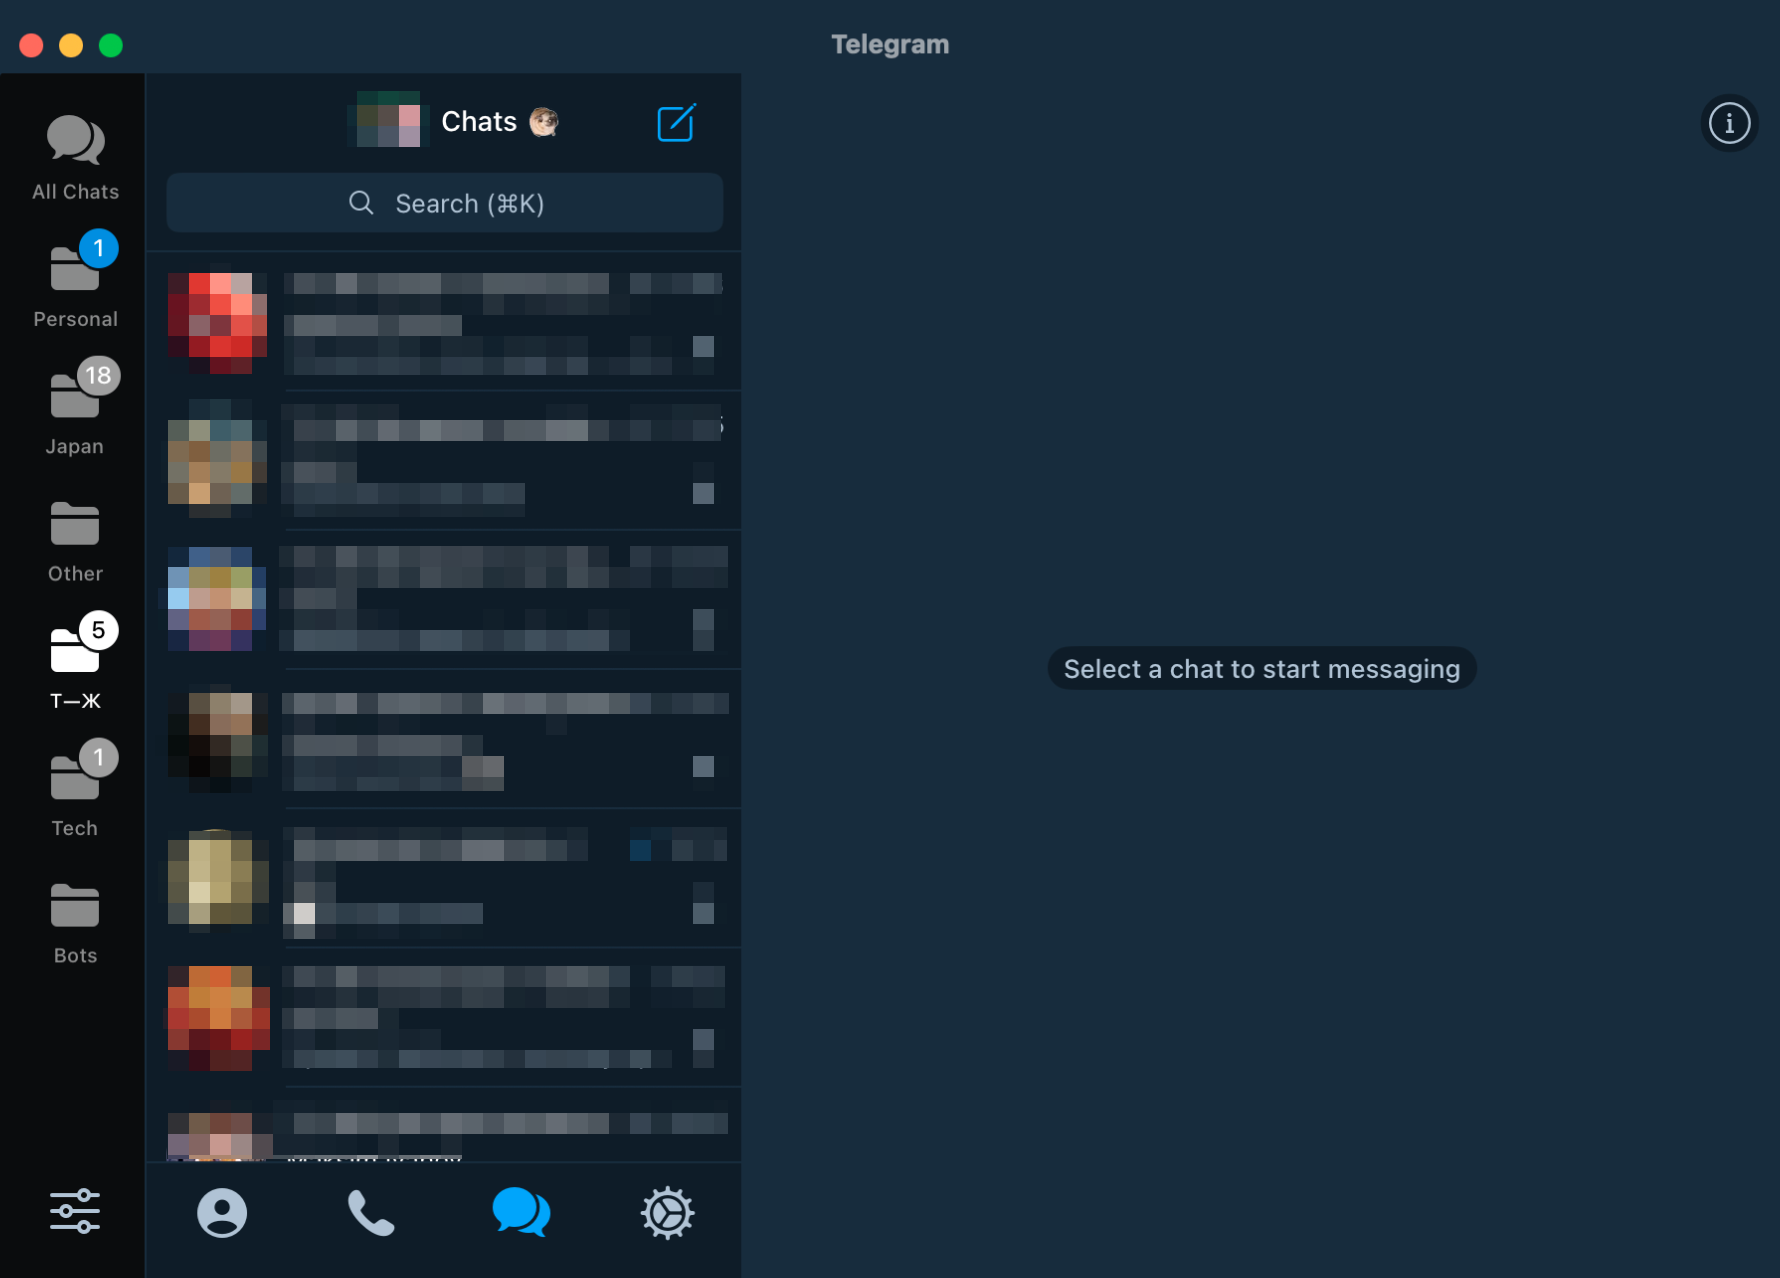 А это Telegram for macOS — в нижней части экрана видна полоска с профилем, звонками, сообщениями и настройками